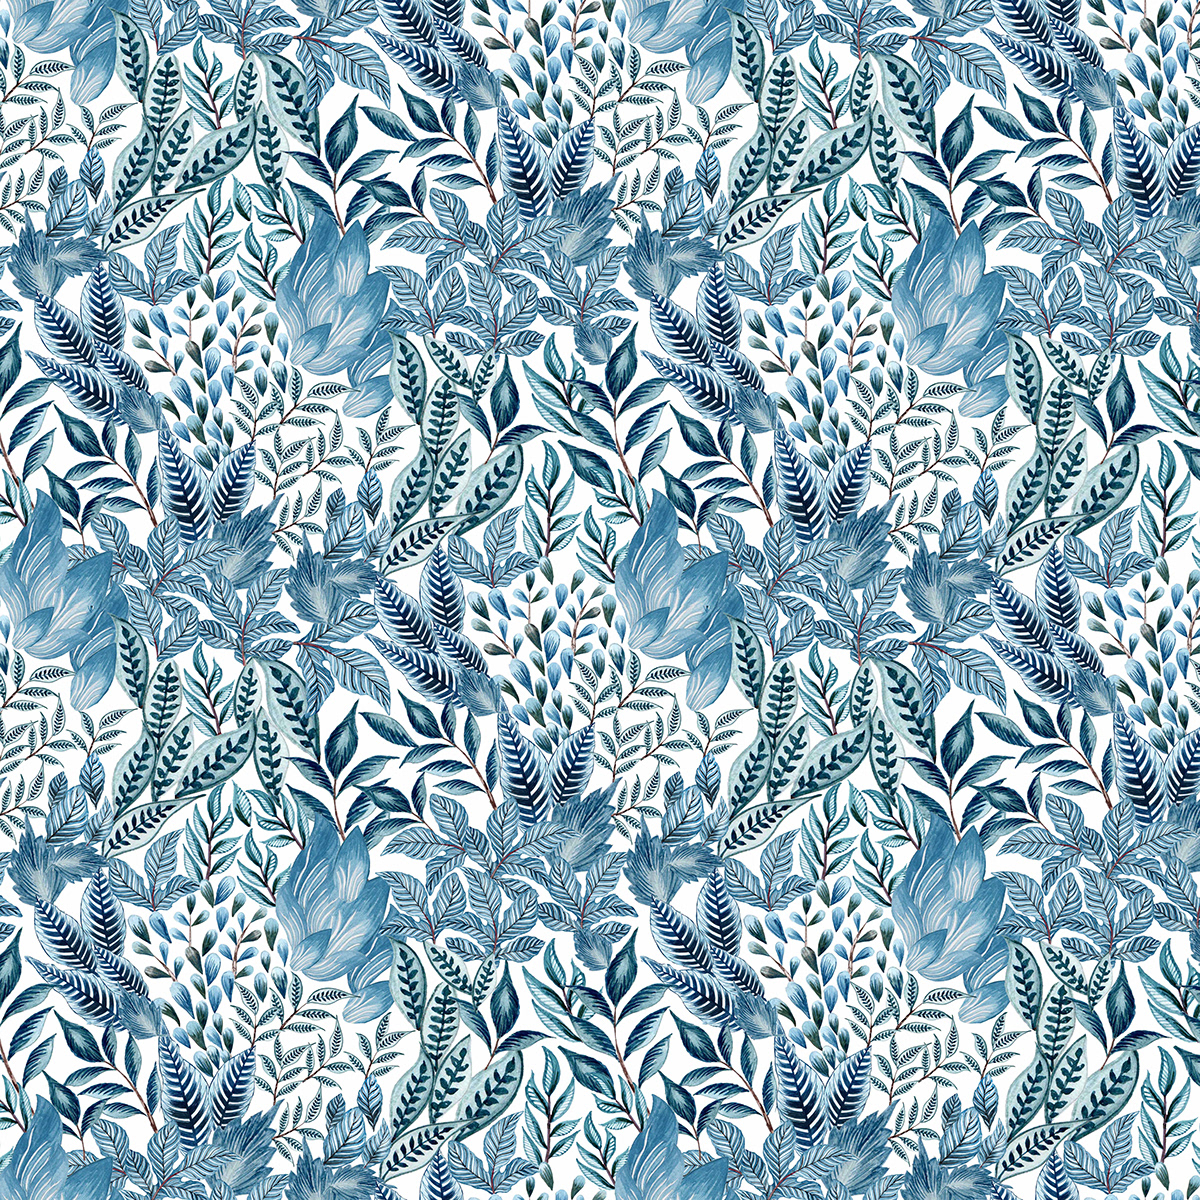 handdrawing artwork digital illustration concept art print design  textile design  pattern floral watercolor Nature